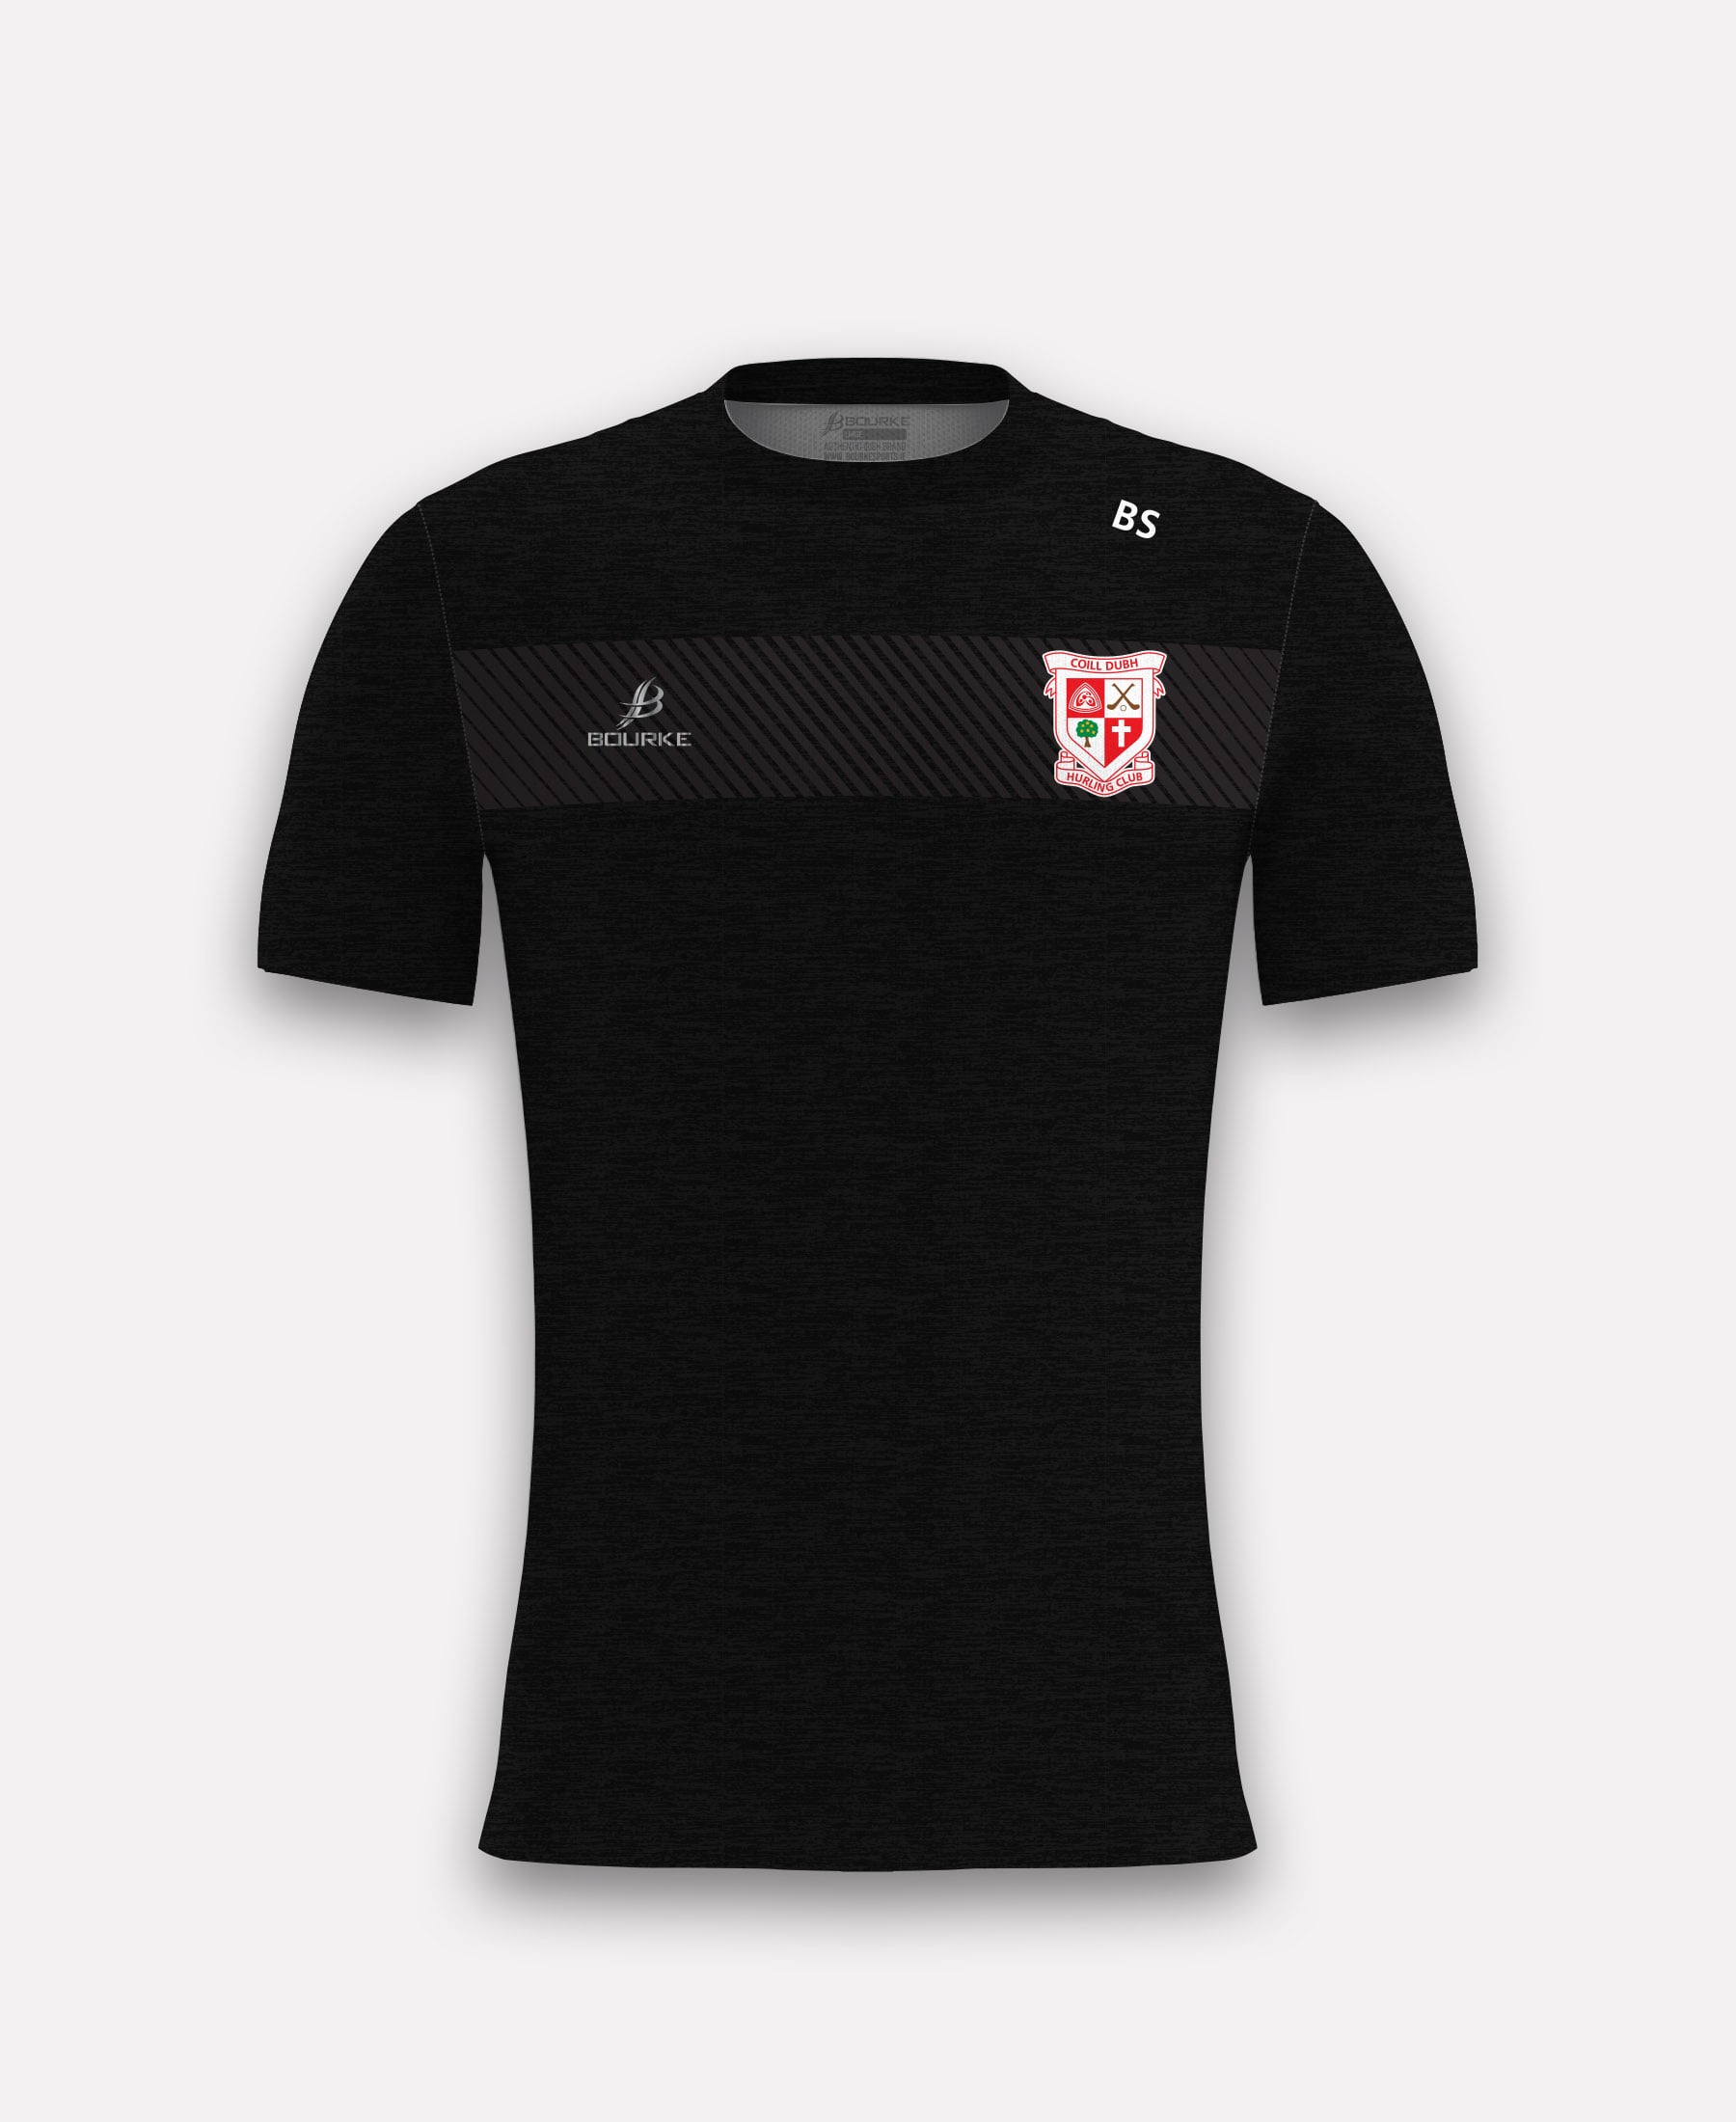 Coill Dubh Hurling Club TACA T-Shirt (Black)